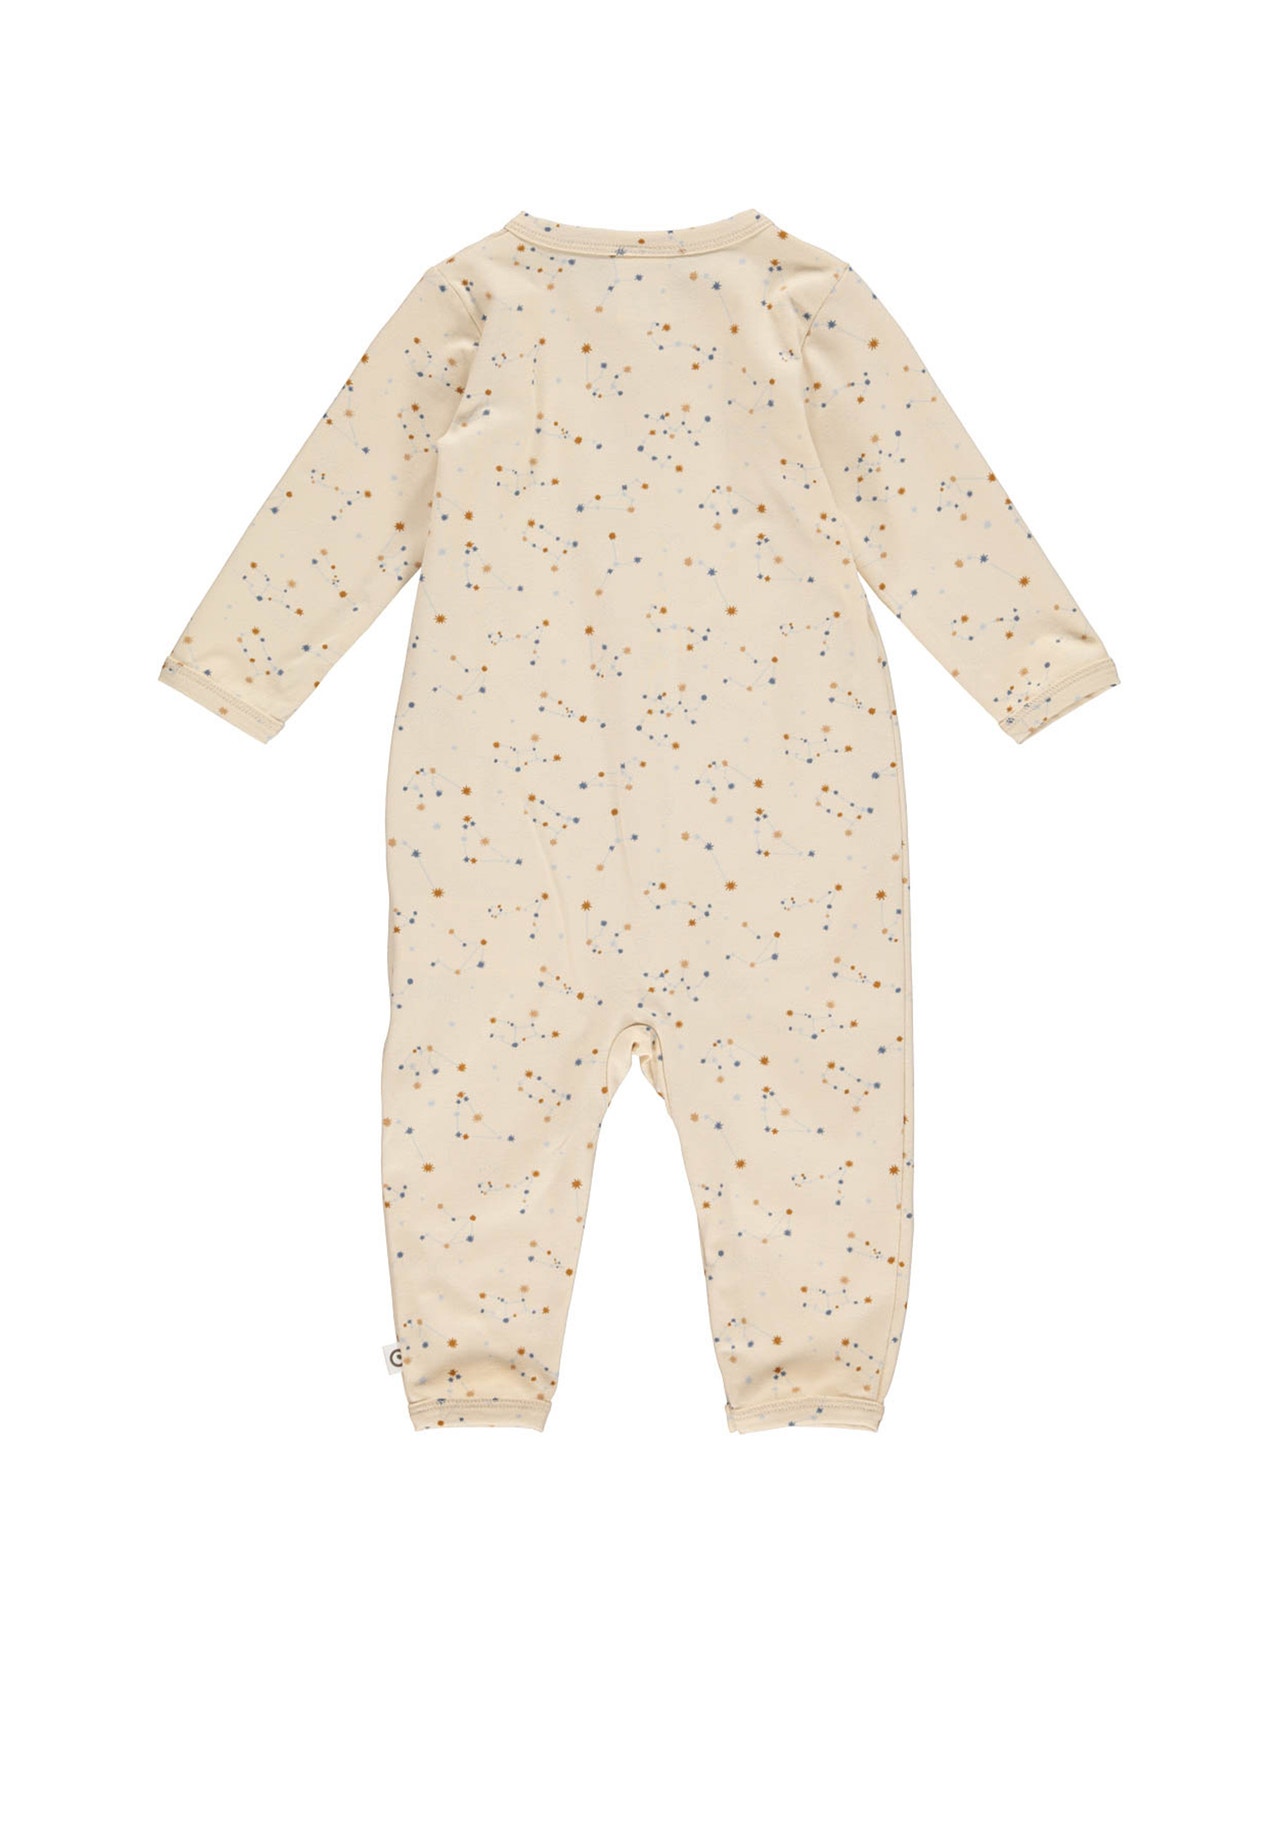 MAMA.LICIOUS Baby-eendelig pak -Buttercream - 1584059200